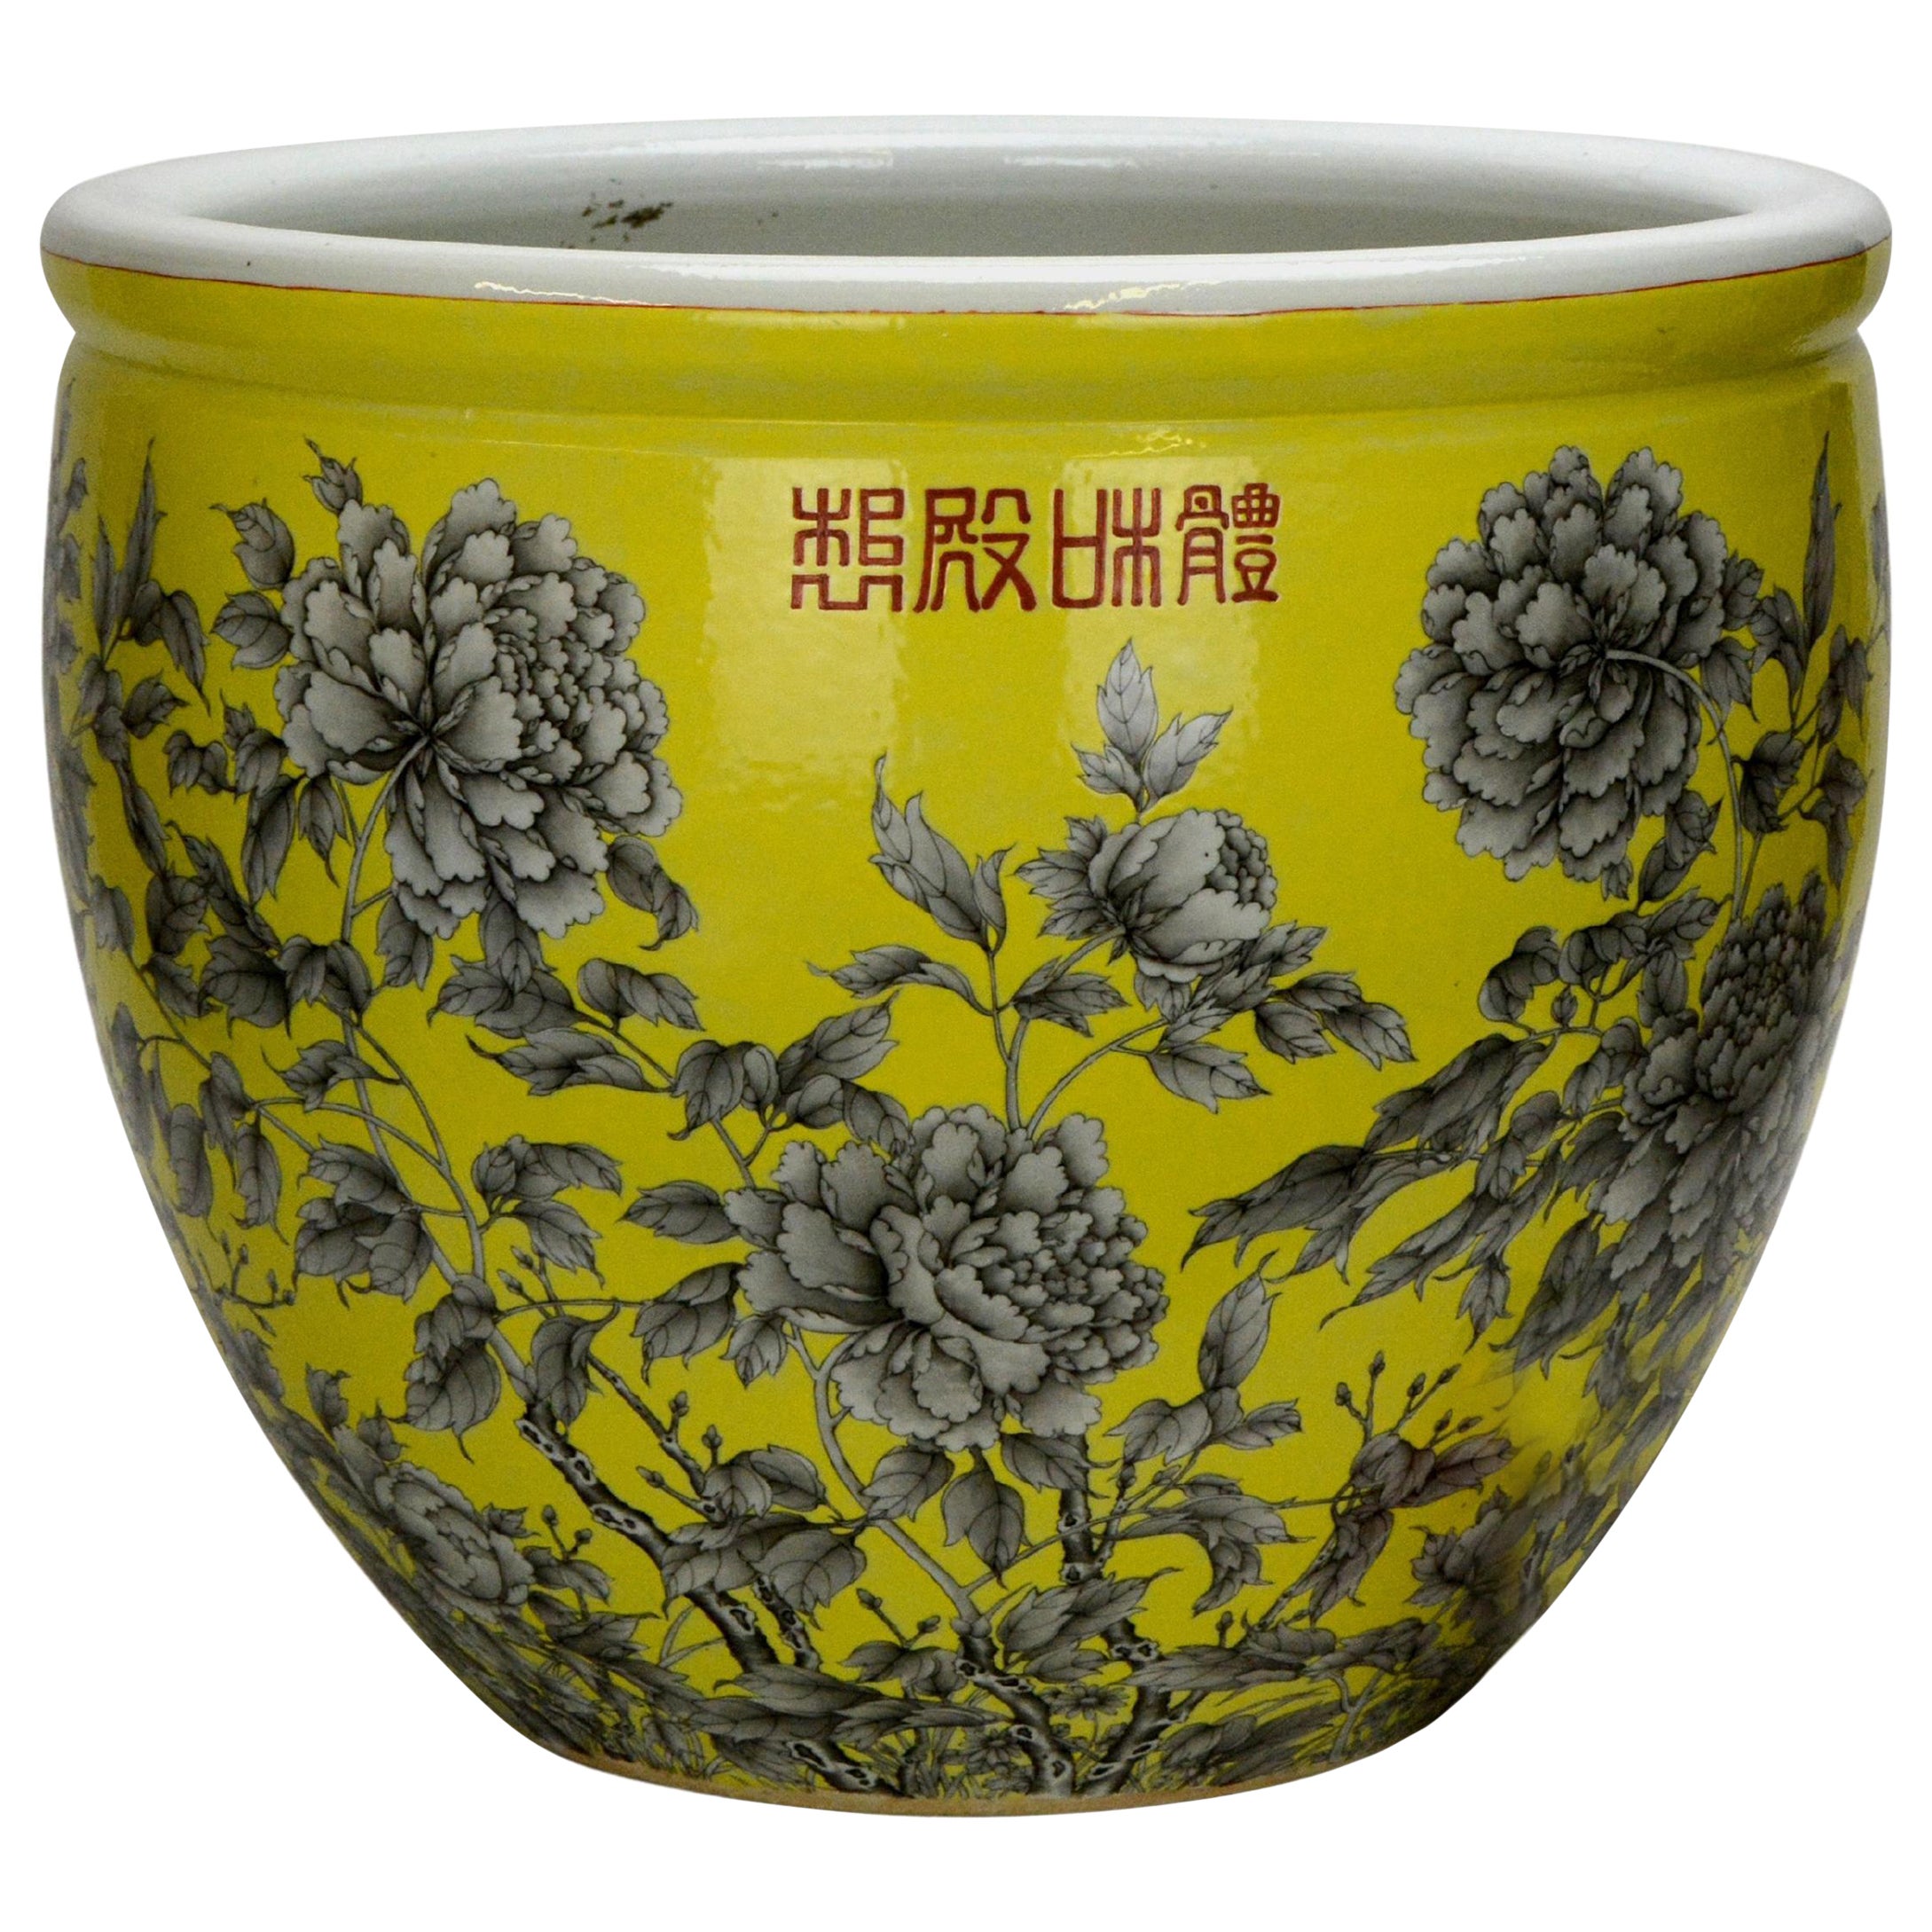 Grande jardinière chinoise Qing en porcelaine émaillée jaune à fleurs noires